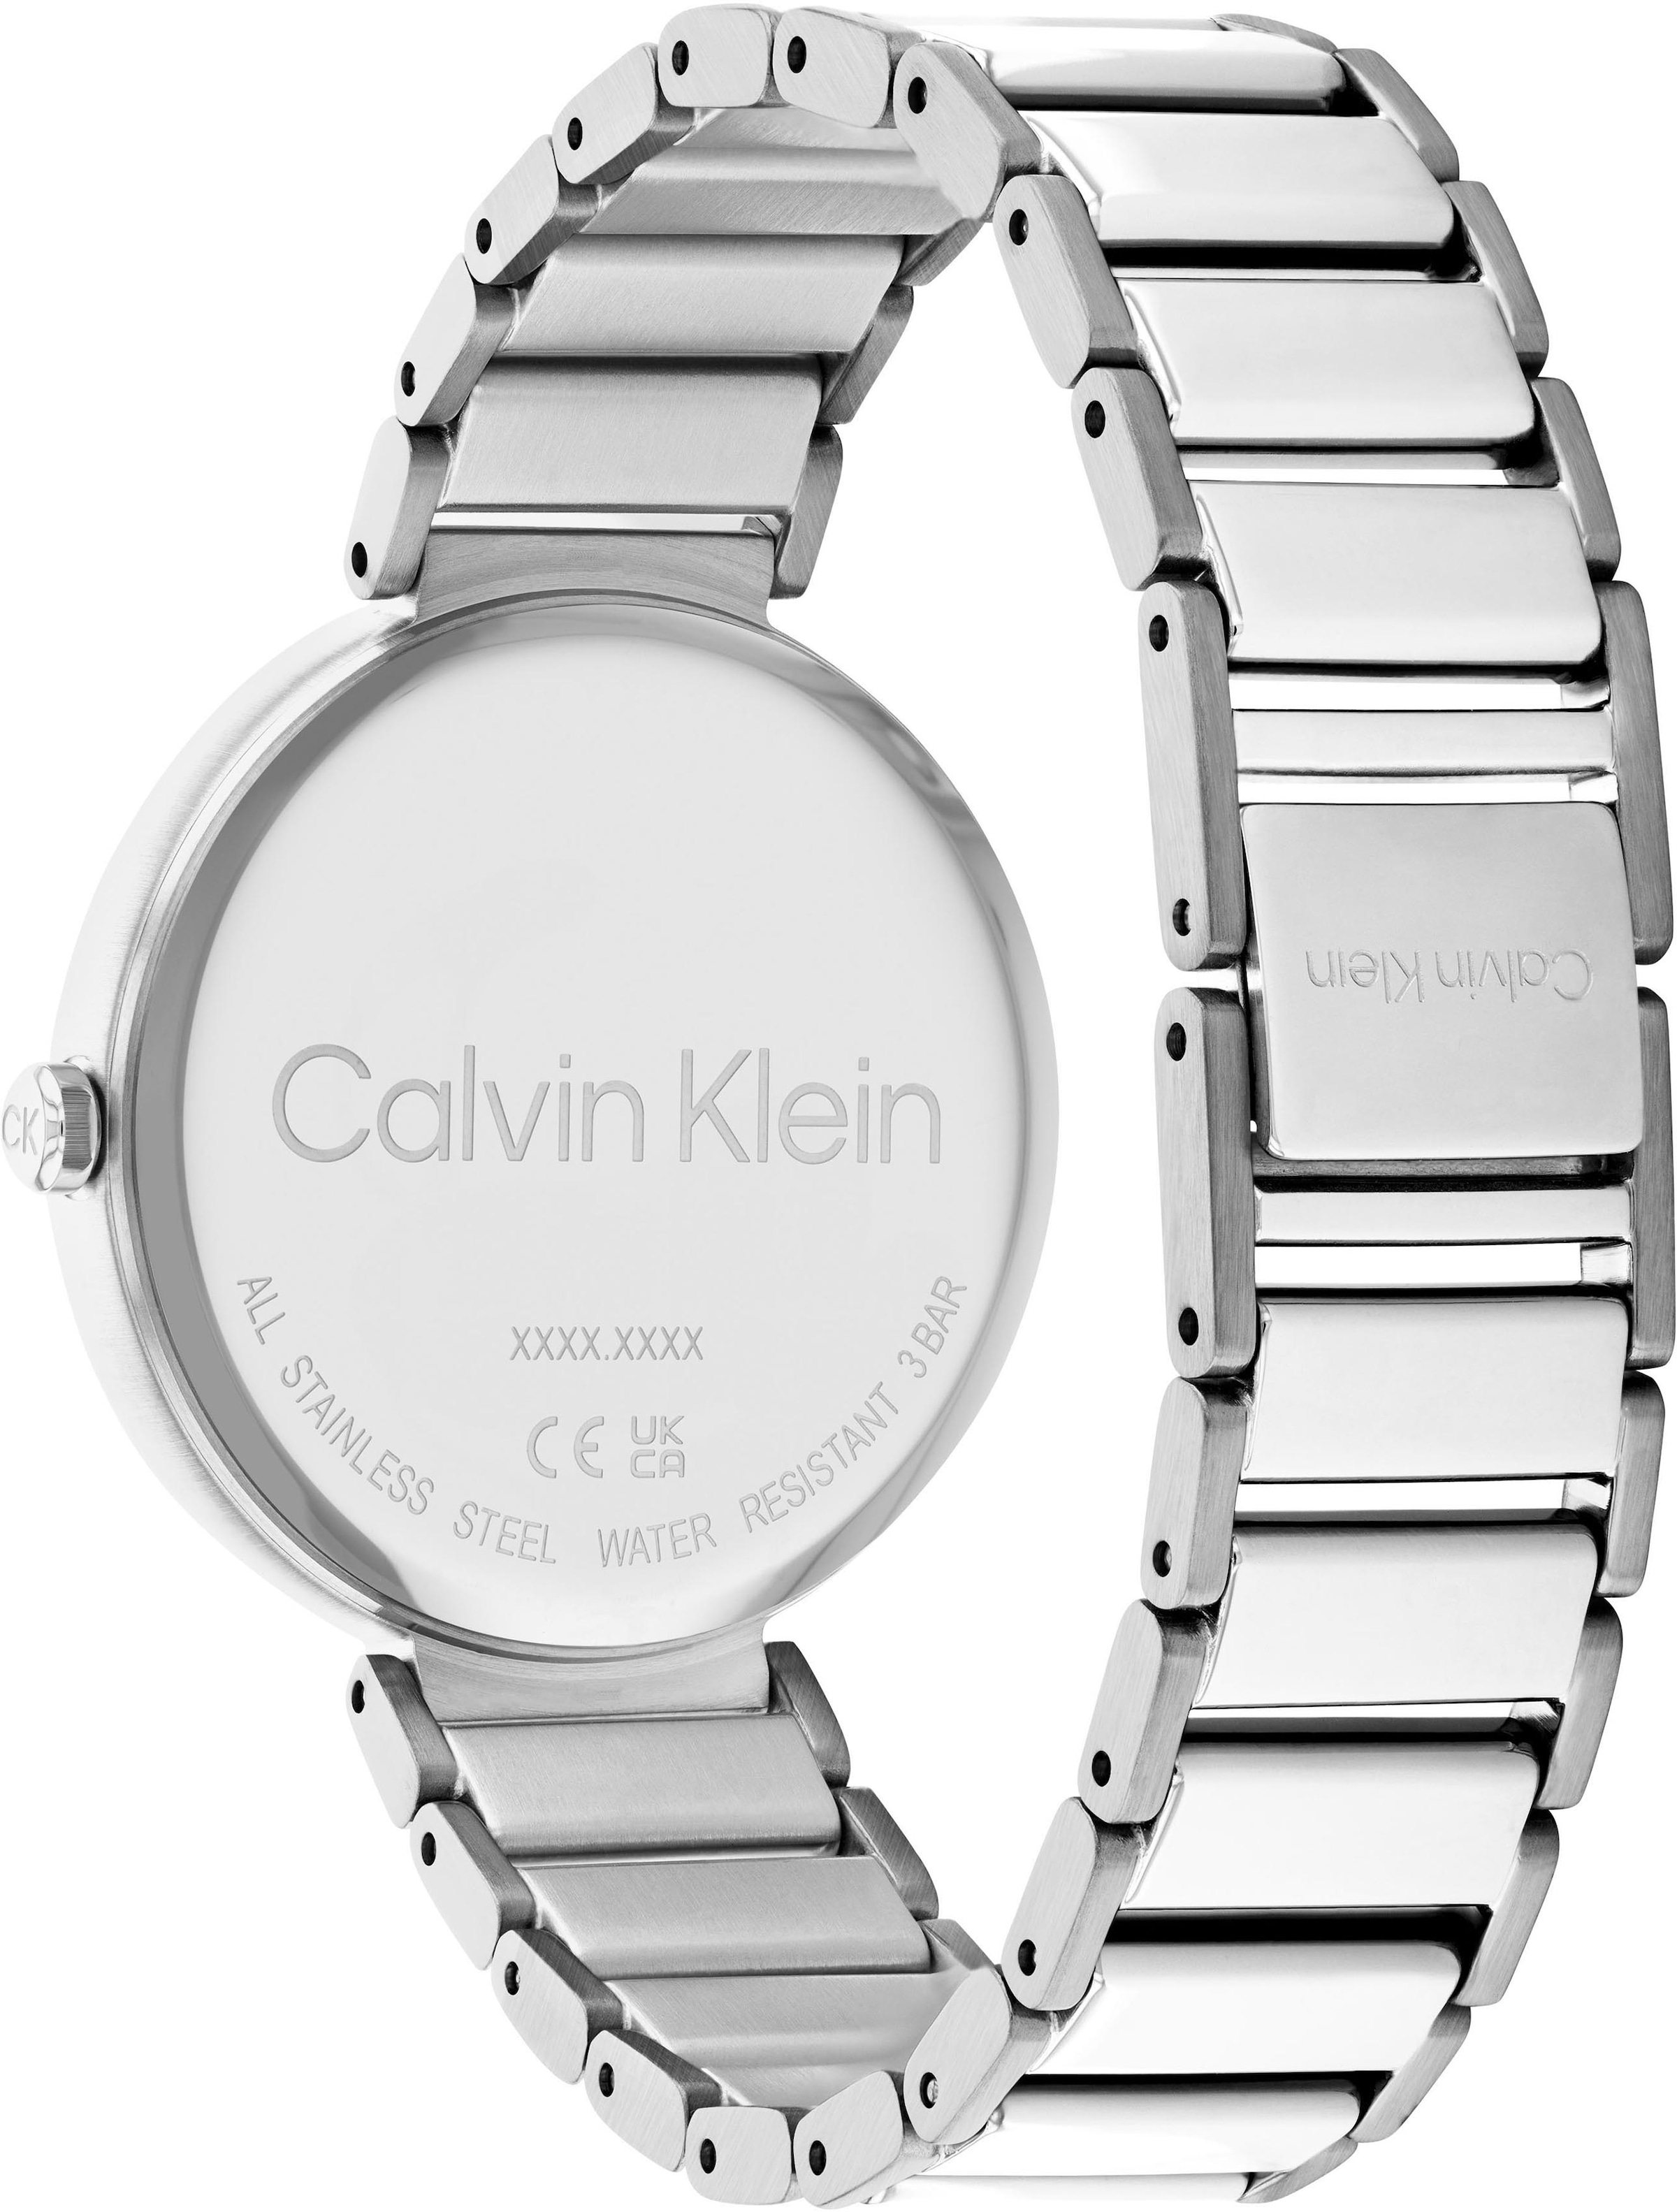 Calvin Klein Quarzuhr »Minimalistic T OTTOversand 36 Bar mm, 25200137« bei